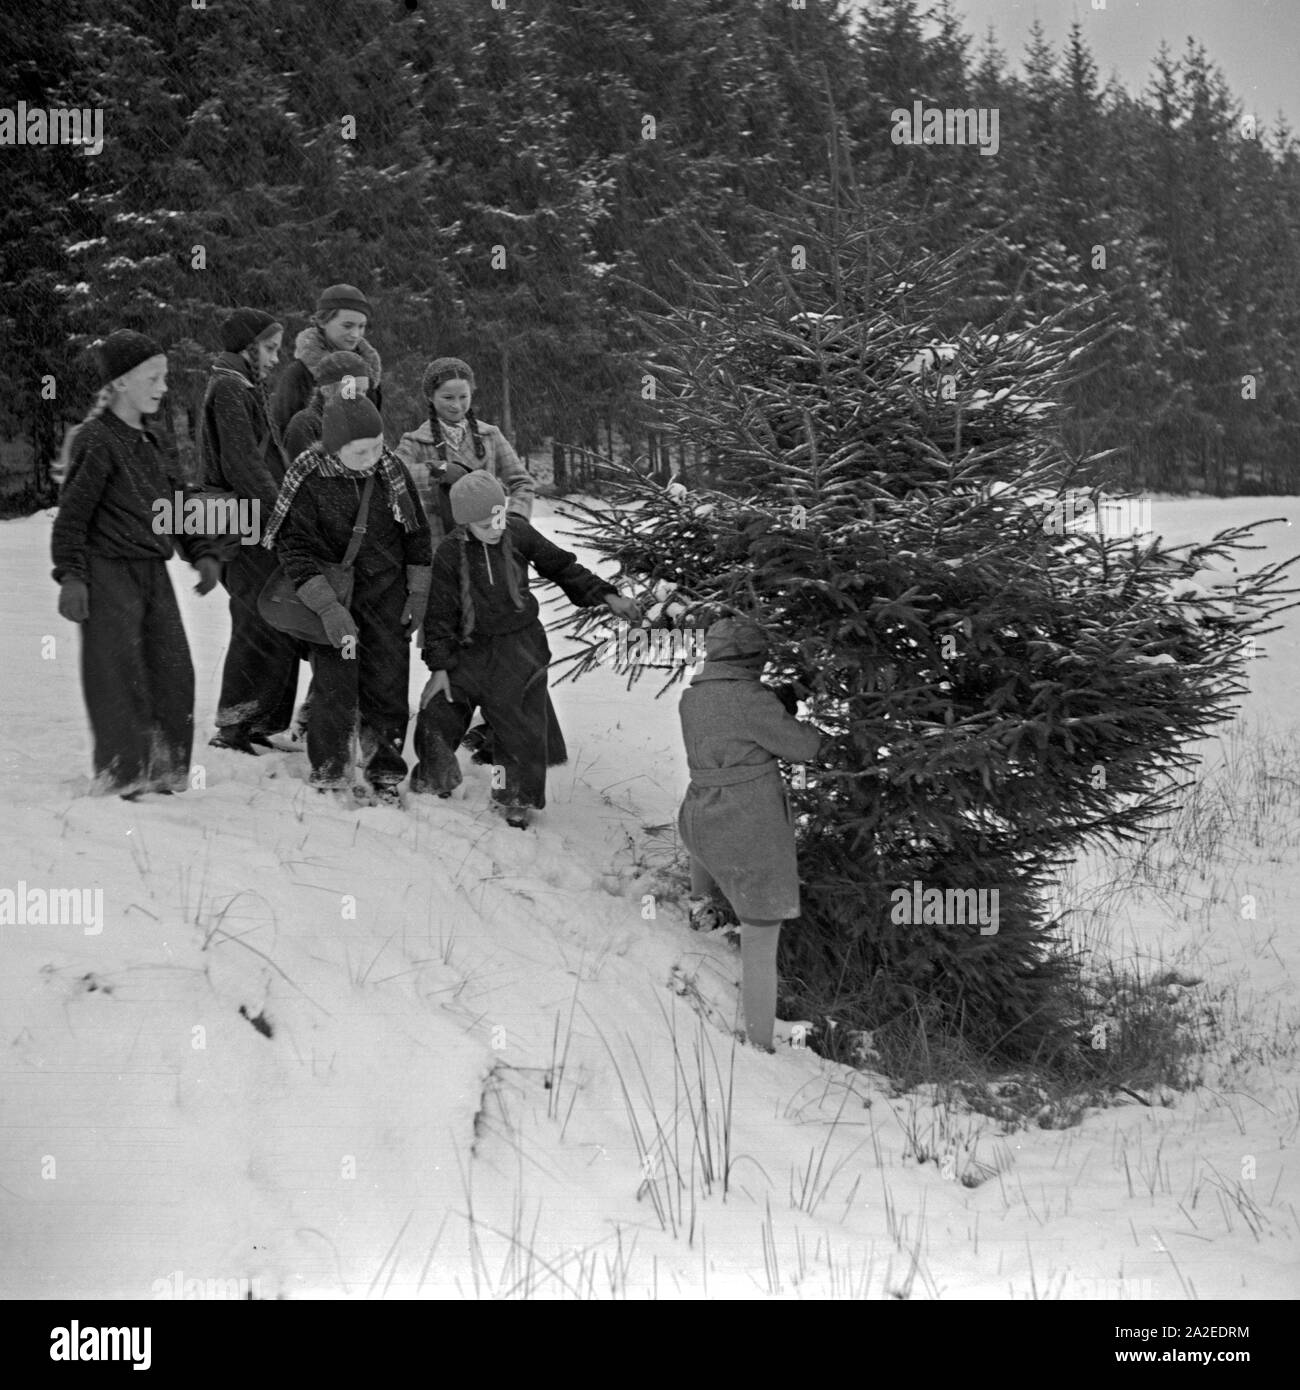 Kinder suchen verschneiten im Wald den passenden Weihnachtsbaum aus, Deutschland 1930er Jahre. I bambini trovano il miglior albero di natale nella foresta innevata, Germania 1930s. Foto Stock